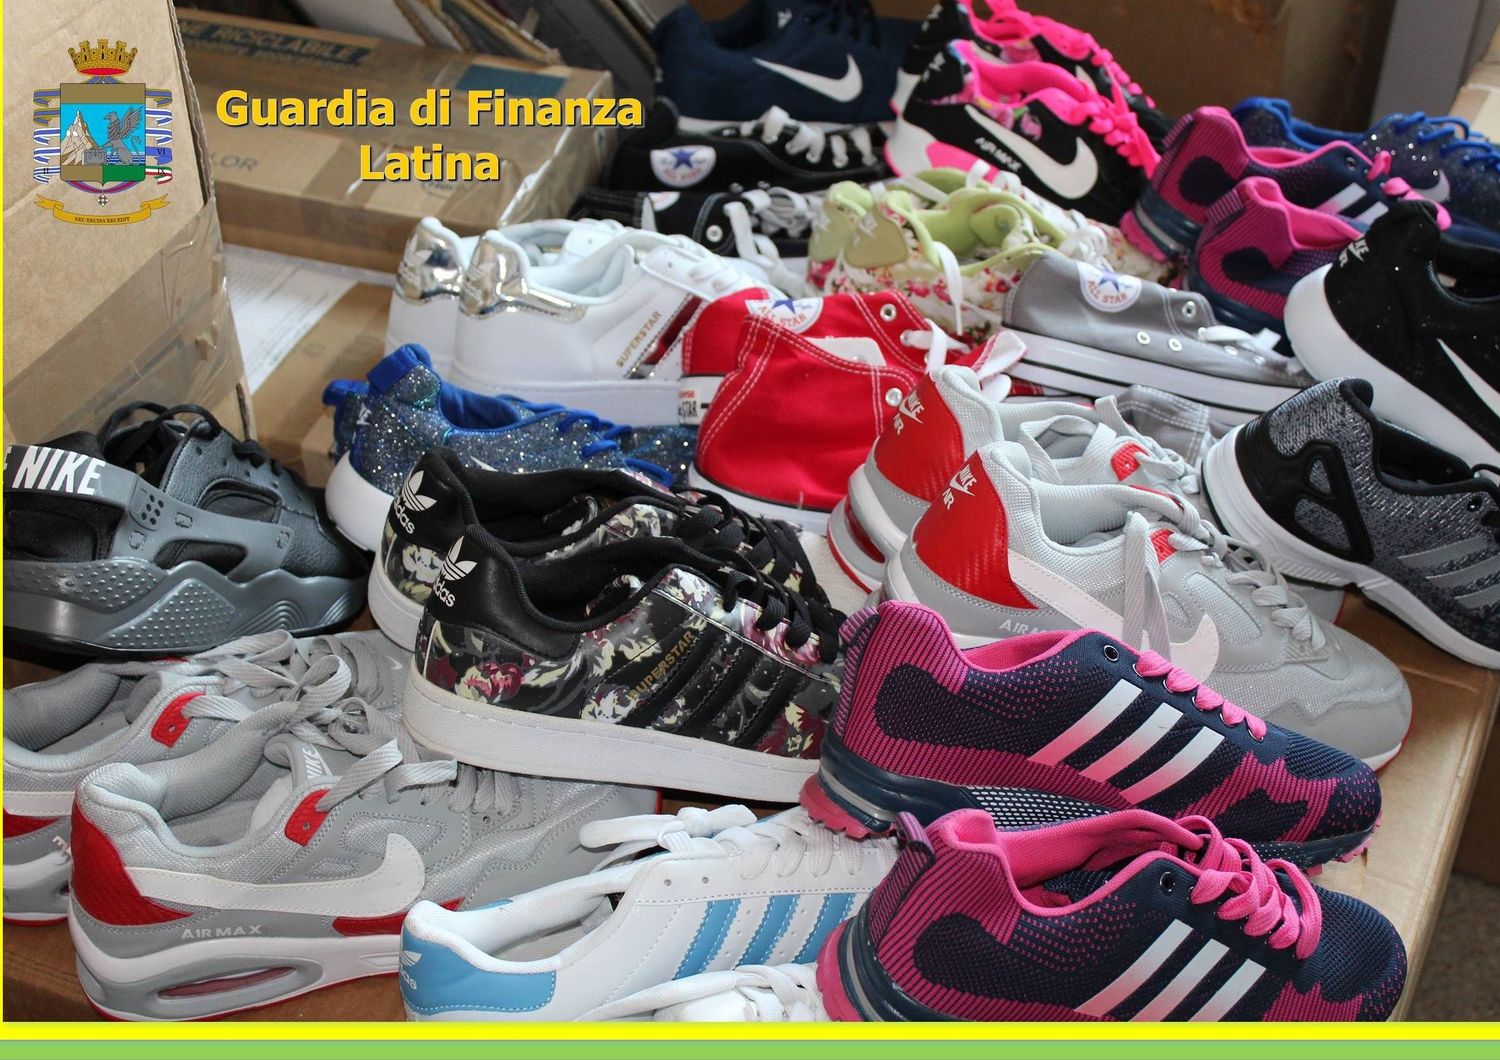 contraffazione prodotti scarpe (guardiafinanza) &nbsp;